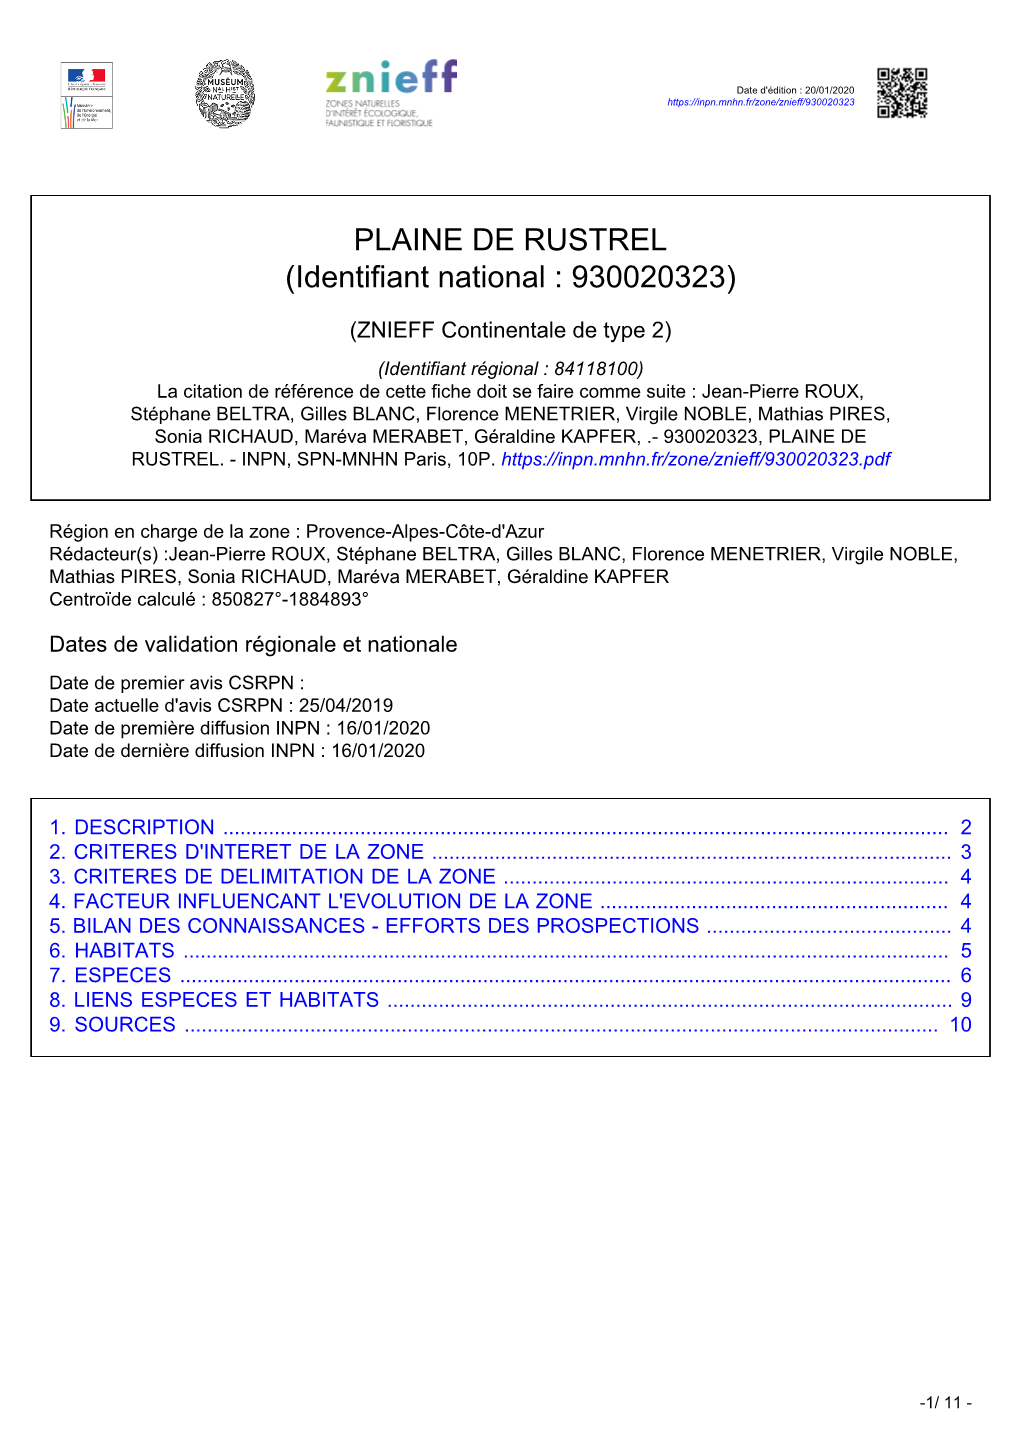 PLAINE DE RUSTREL (Identifiant National : 930020323)